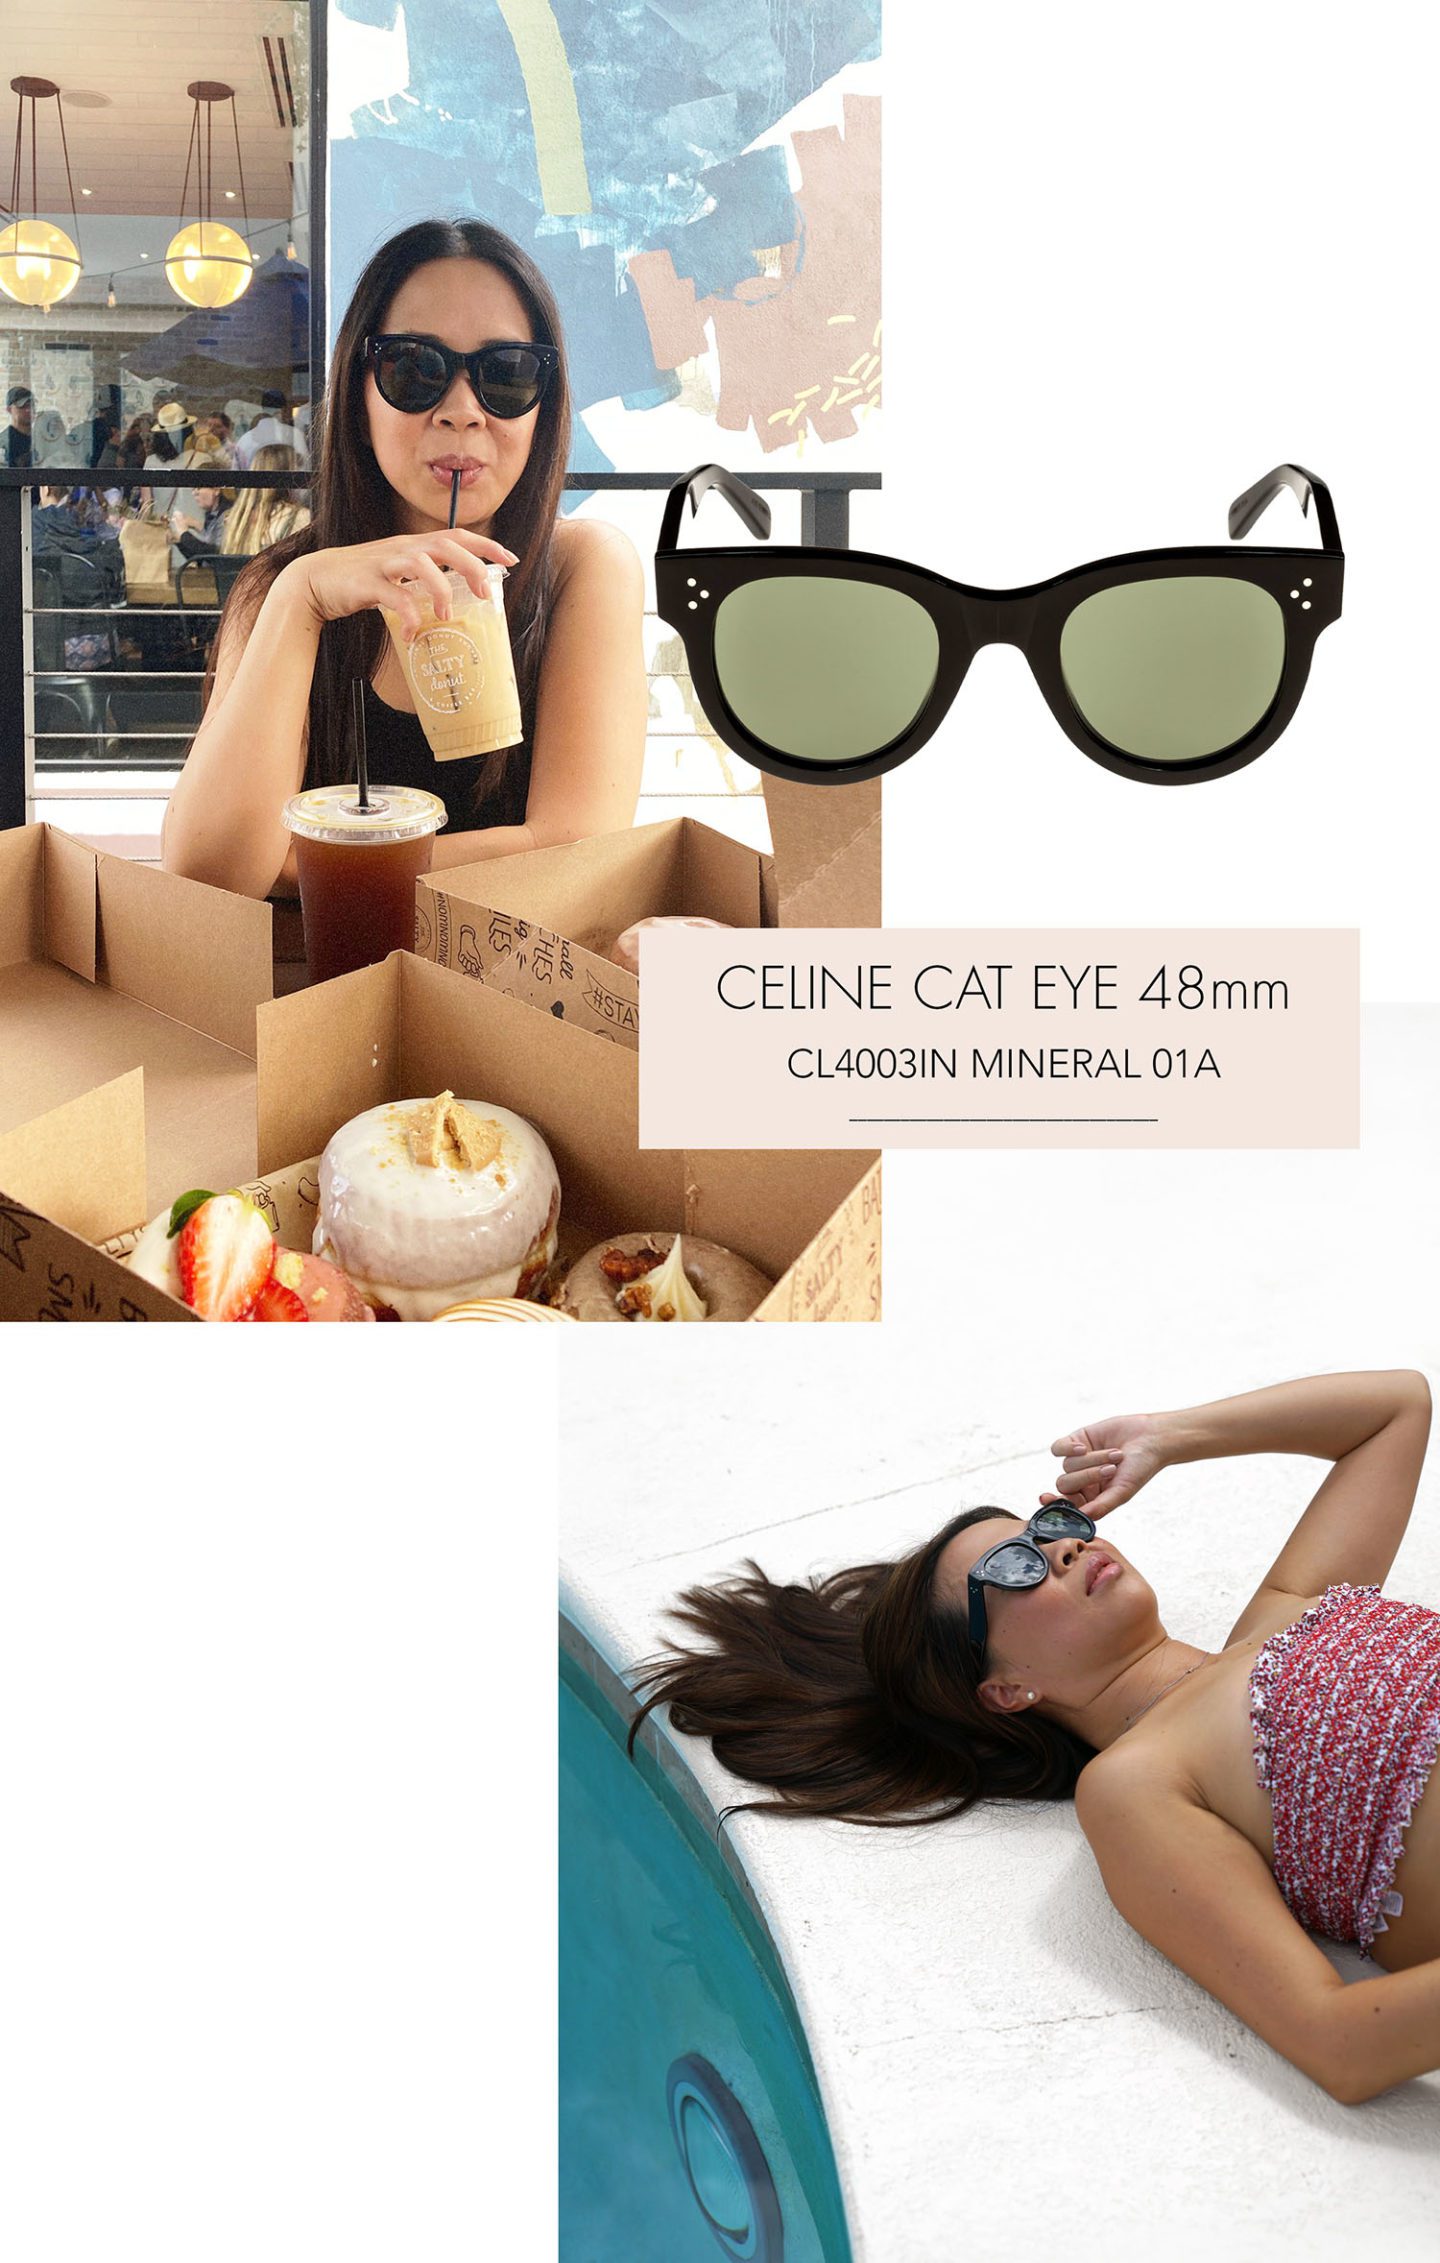 Celine Cat Eye 48mm Sunglasses Black